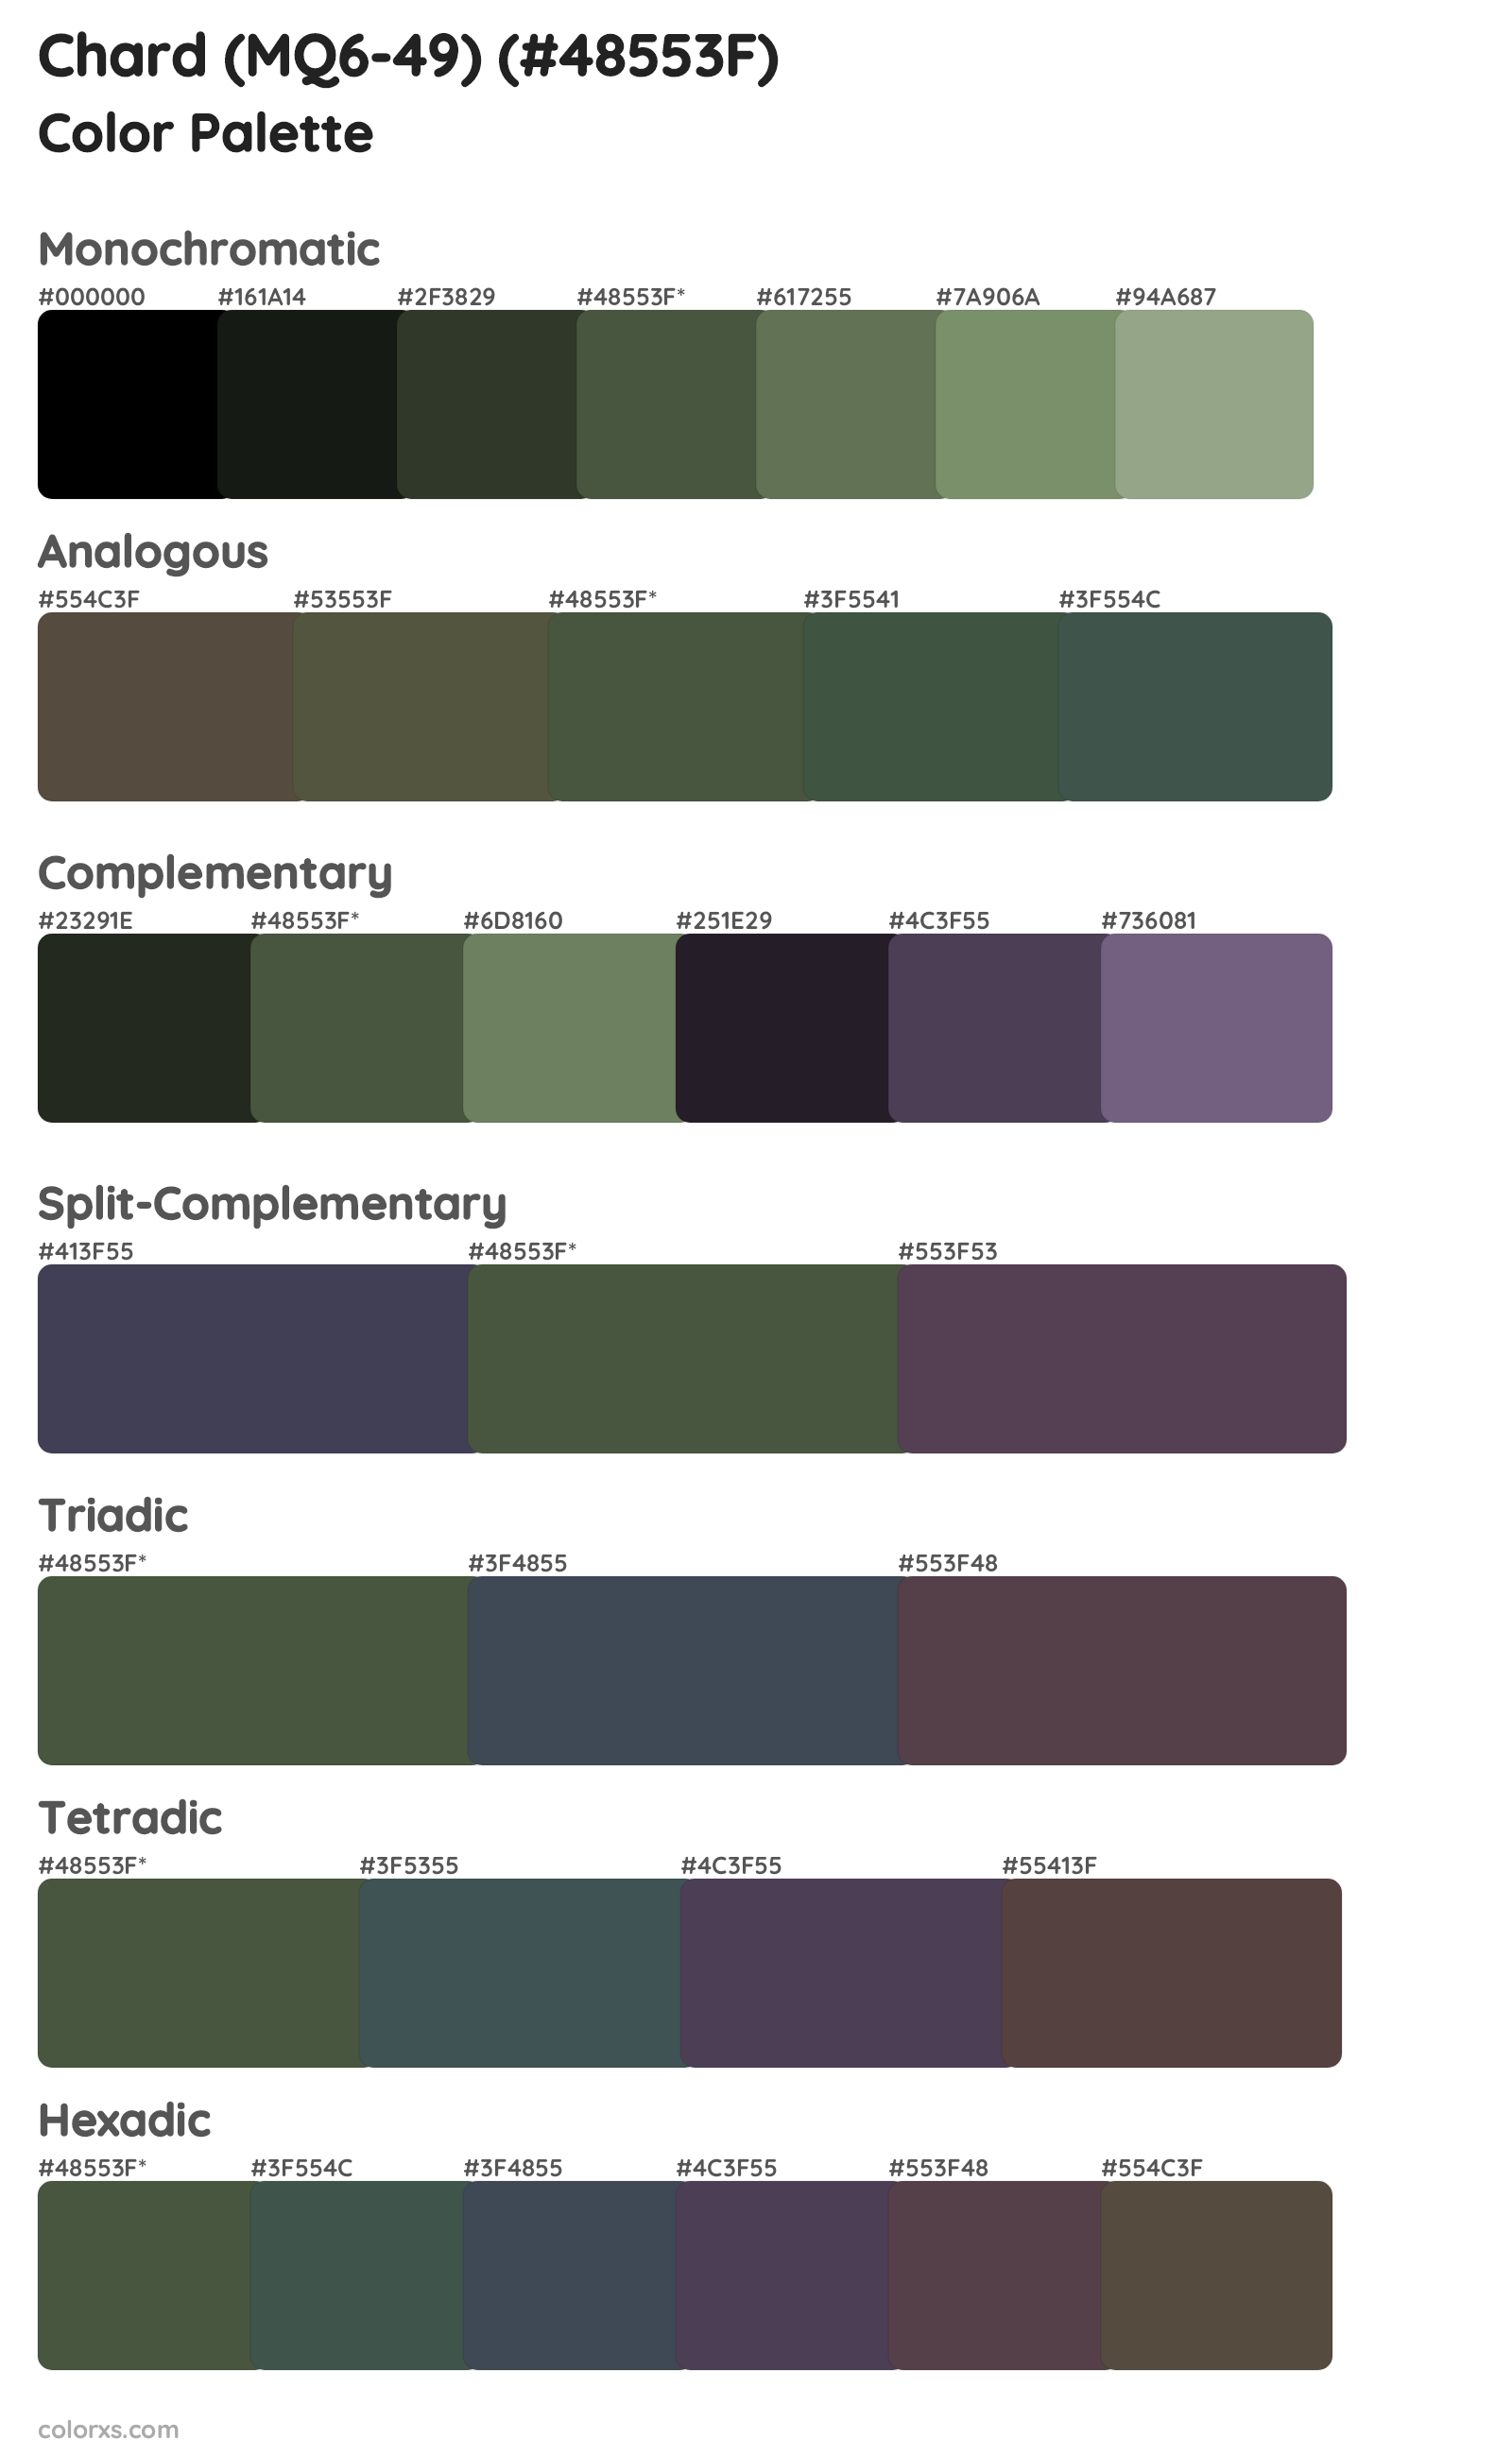 Chard (MQ6-49) Color Scheme Palettes